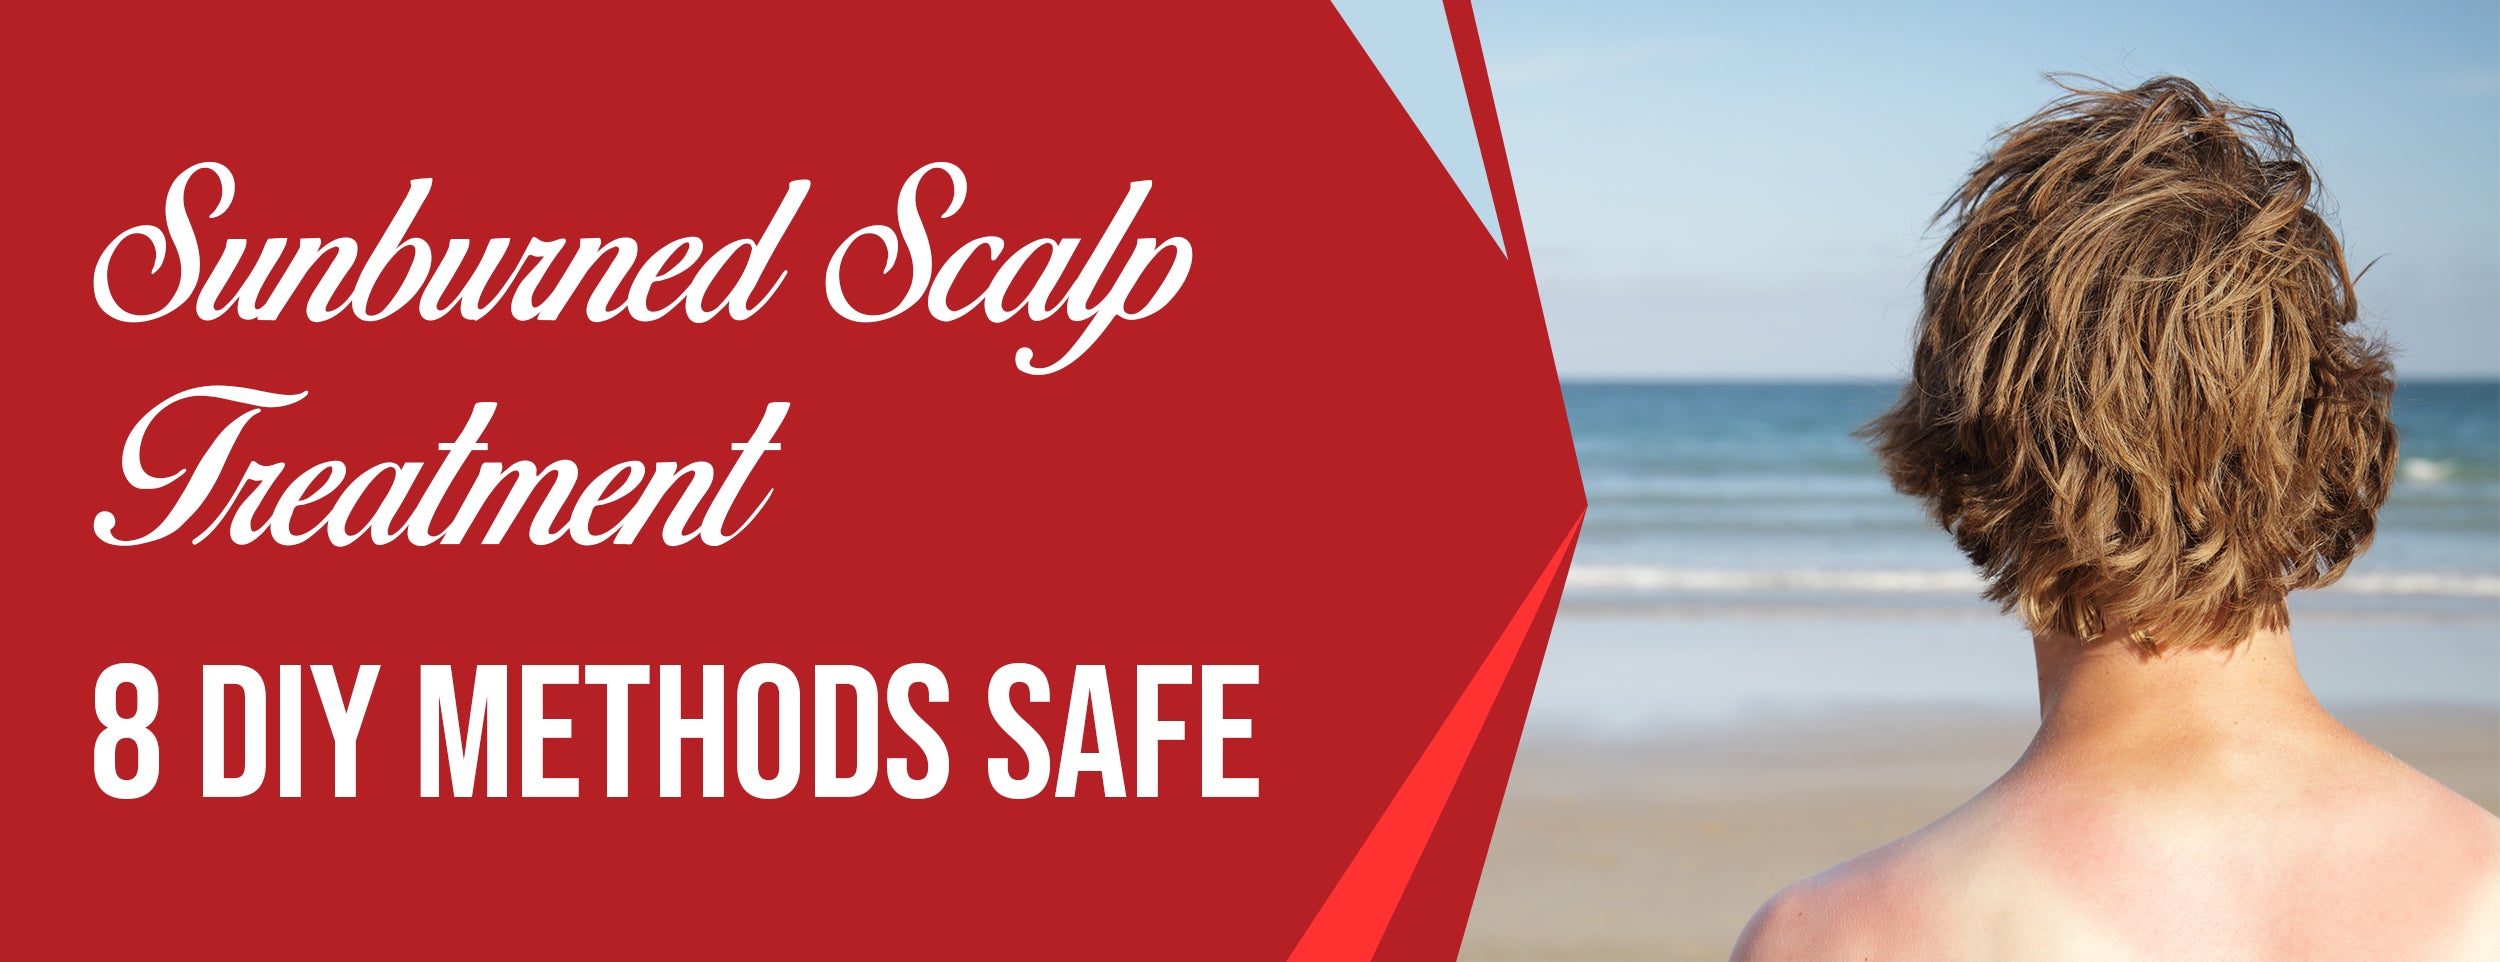 Sunburned Scalp Treatment 8 Diy Methods Safe Dr Numb®